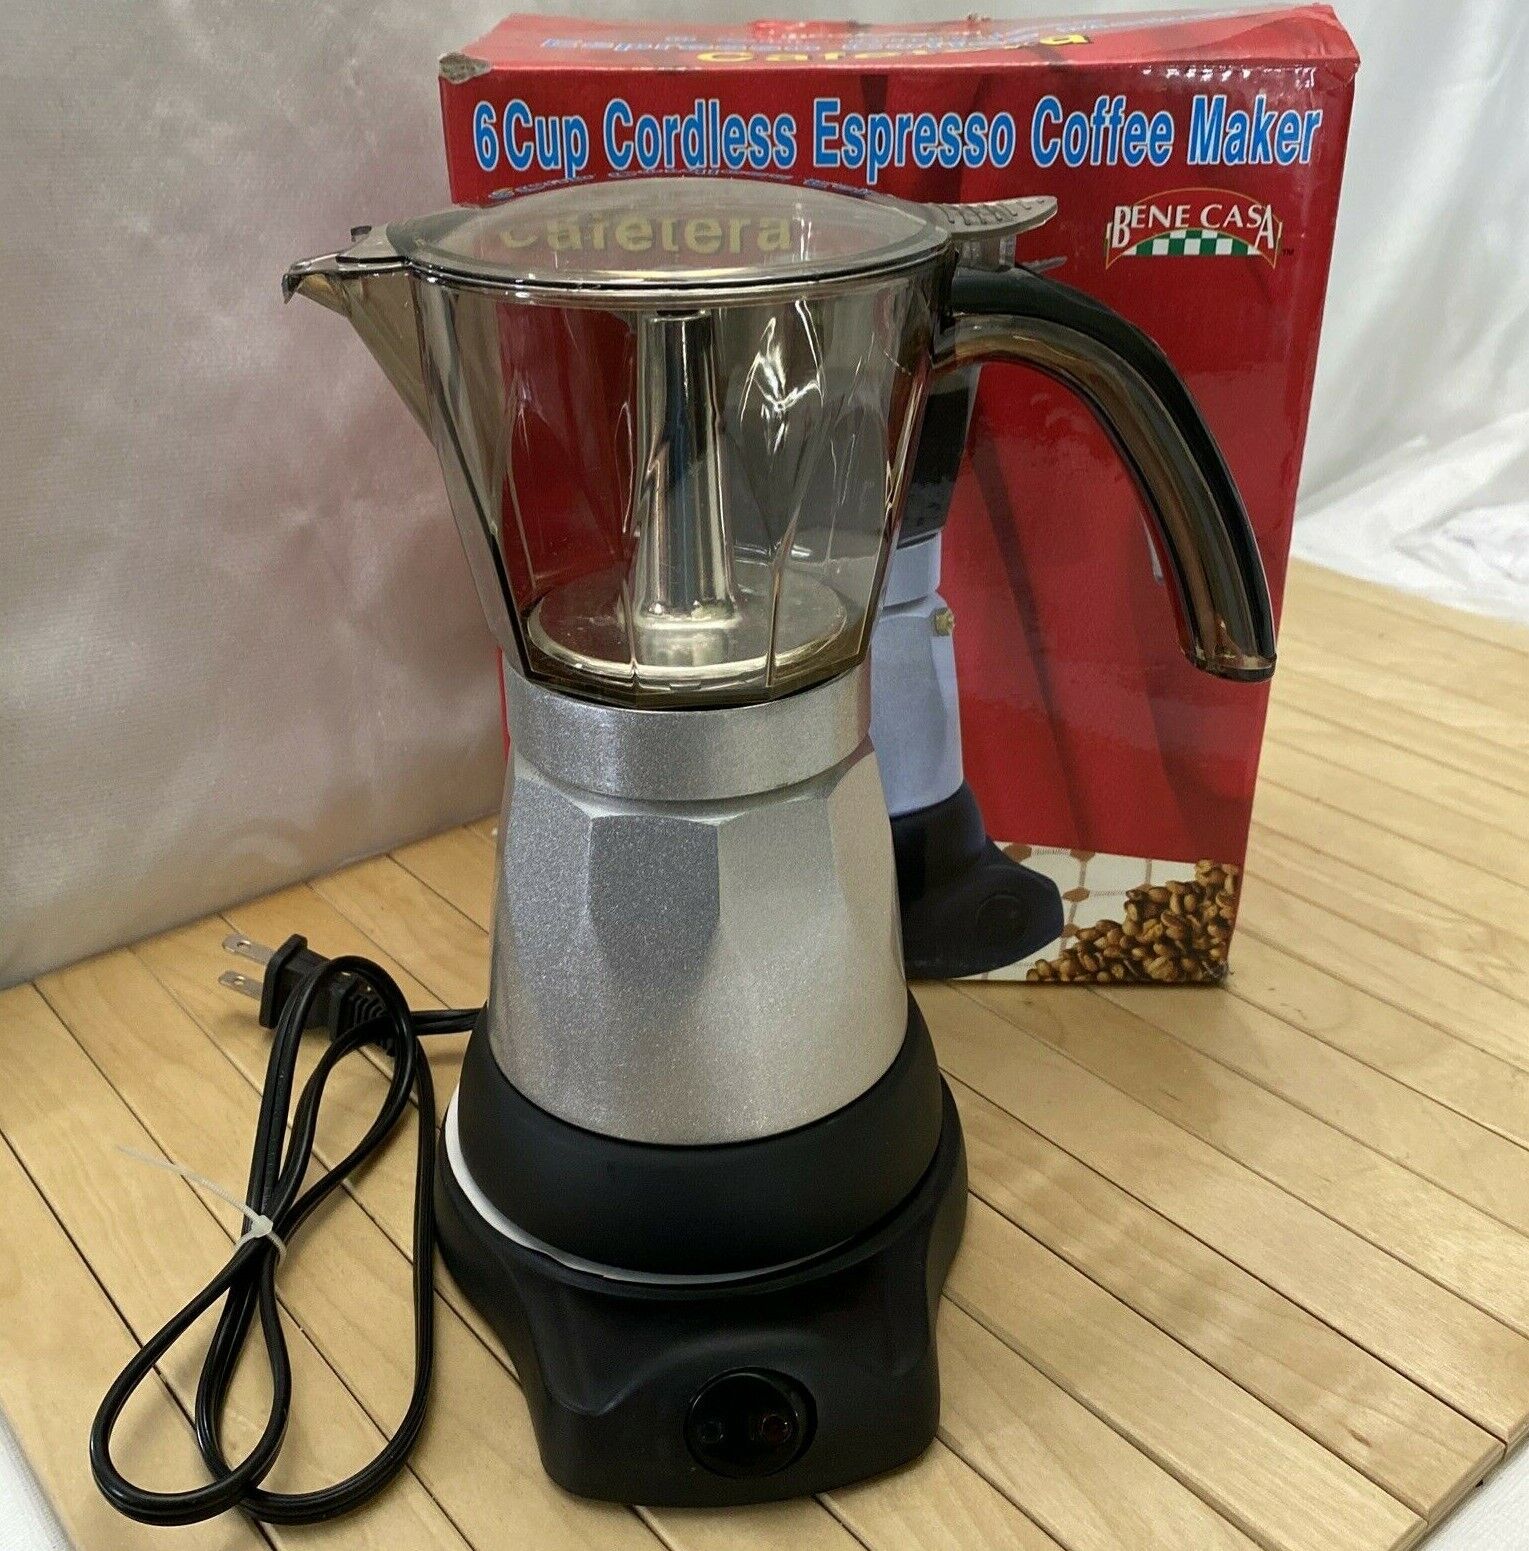 Bene Casa Aluminum Stove Top 3-Cup Espresso Maker w/ Transparent Lid